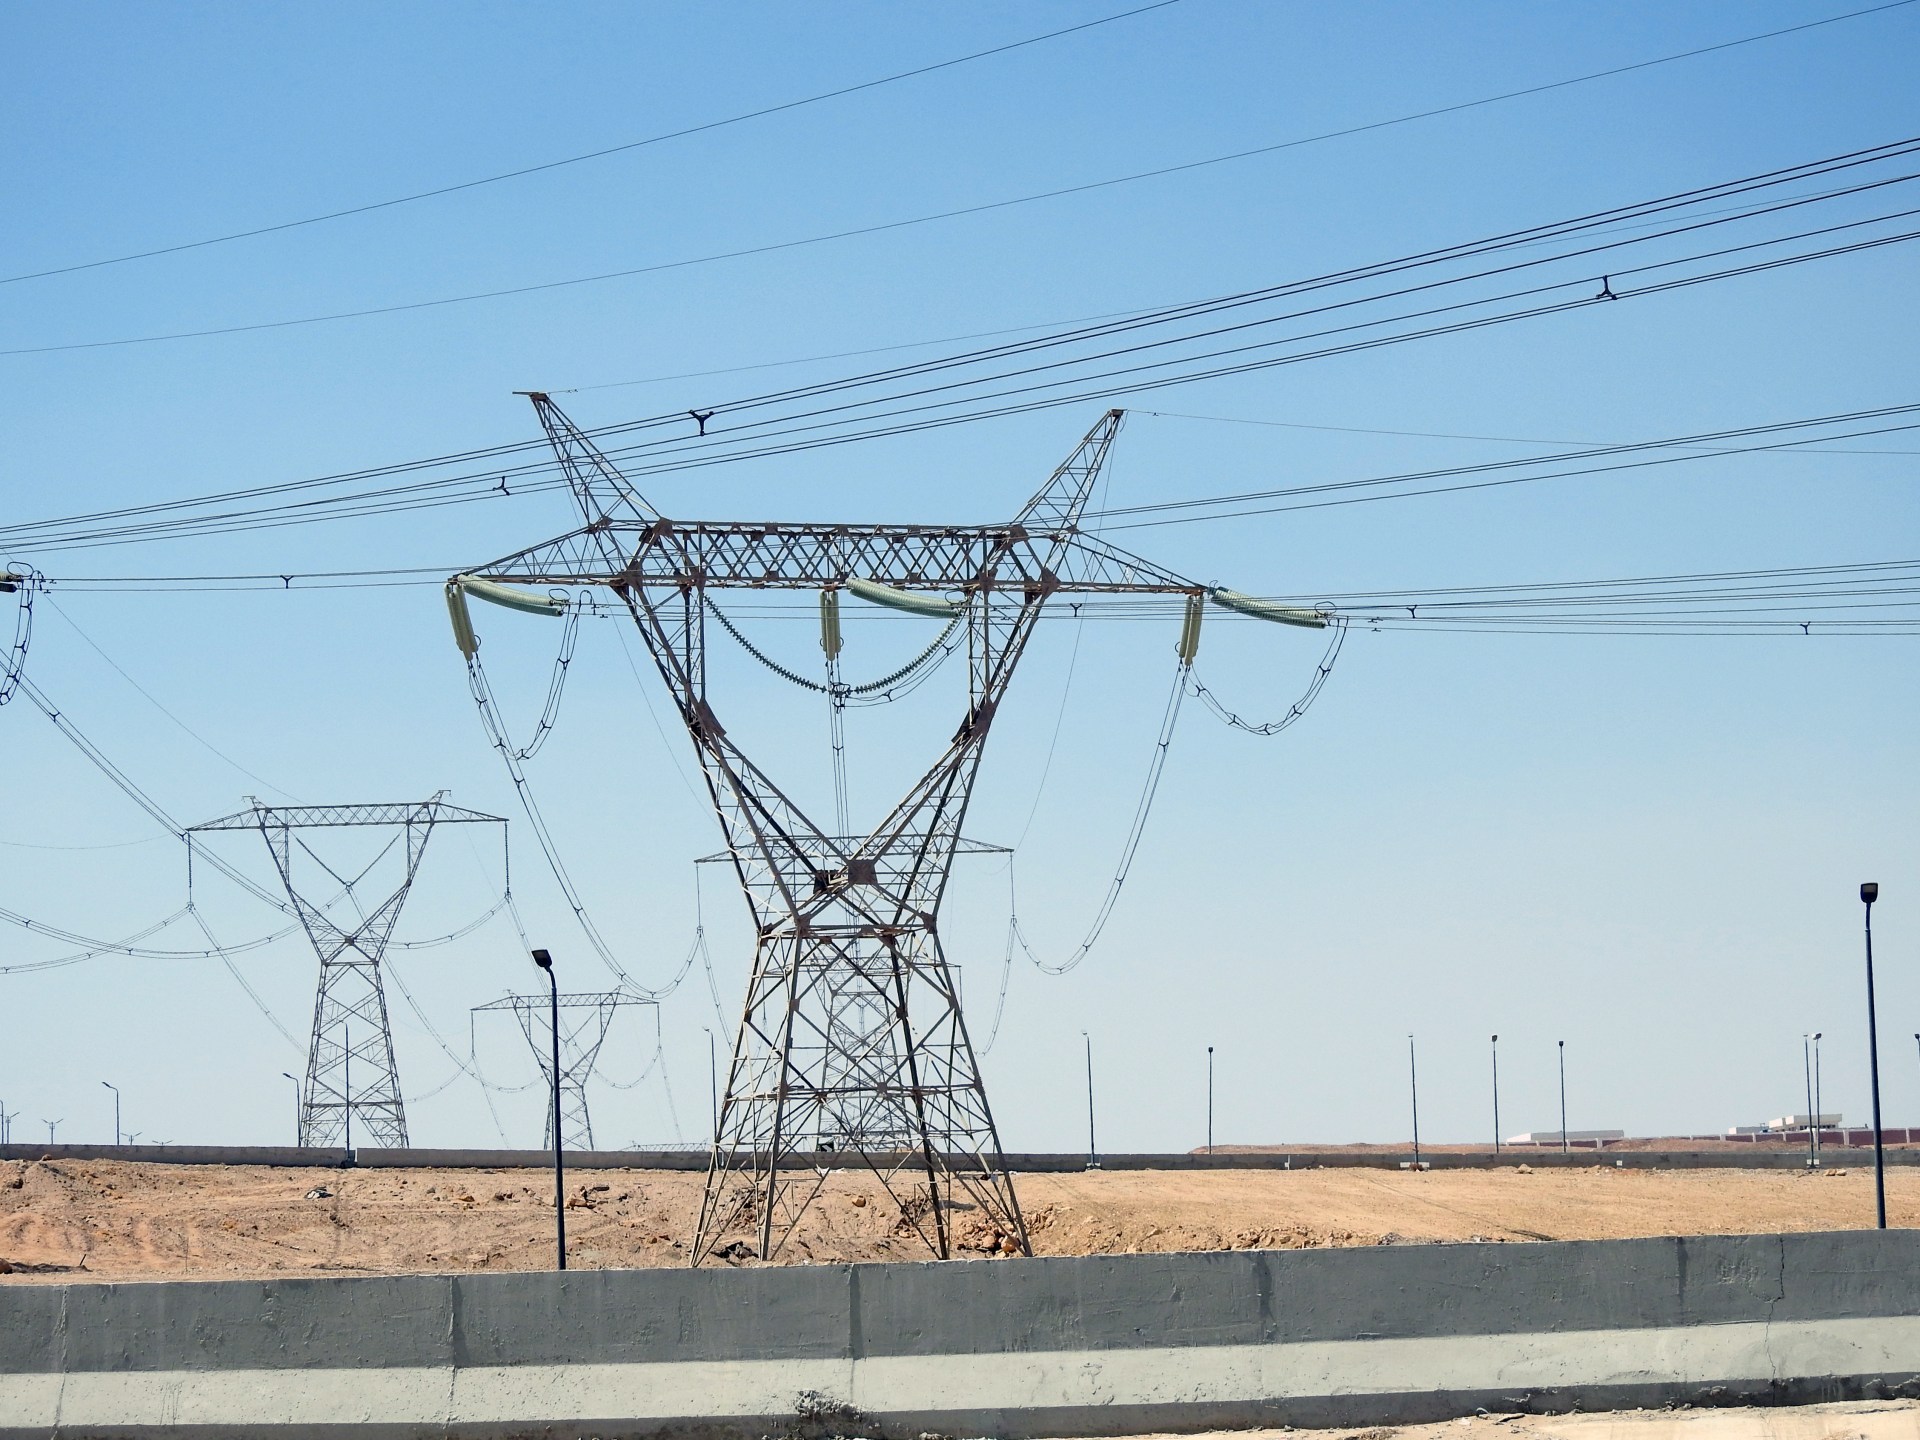 كيف تواجه مصر تأثيرات نقص الغاز الإسرائيلي على قطاع الكهرباء؟ | اقتصاد – البوكس نيوز